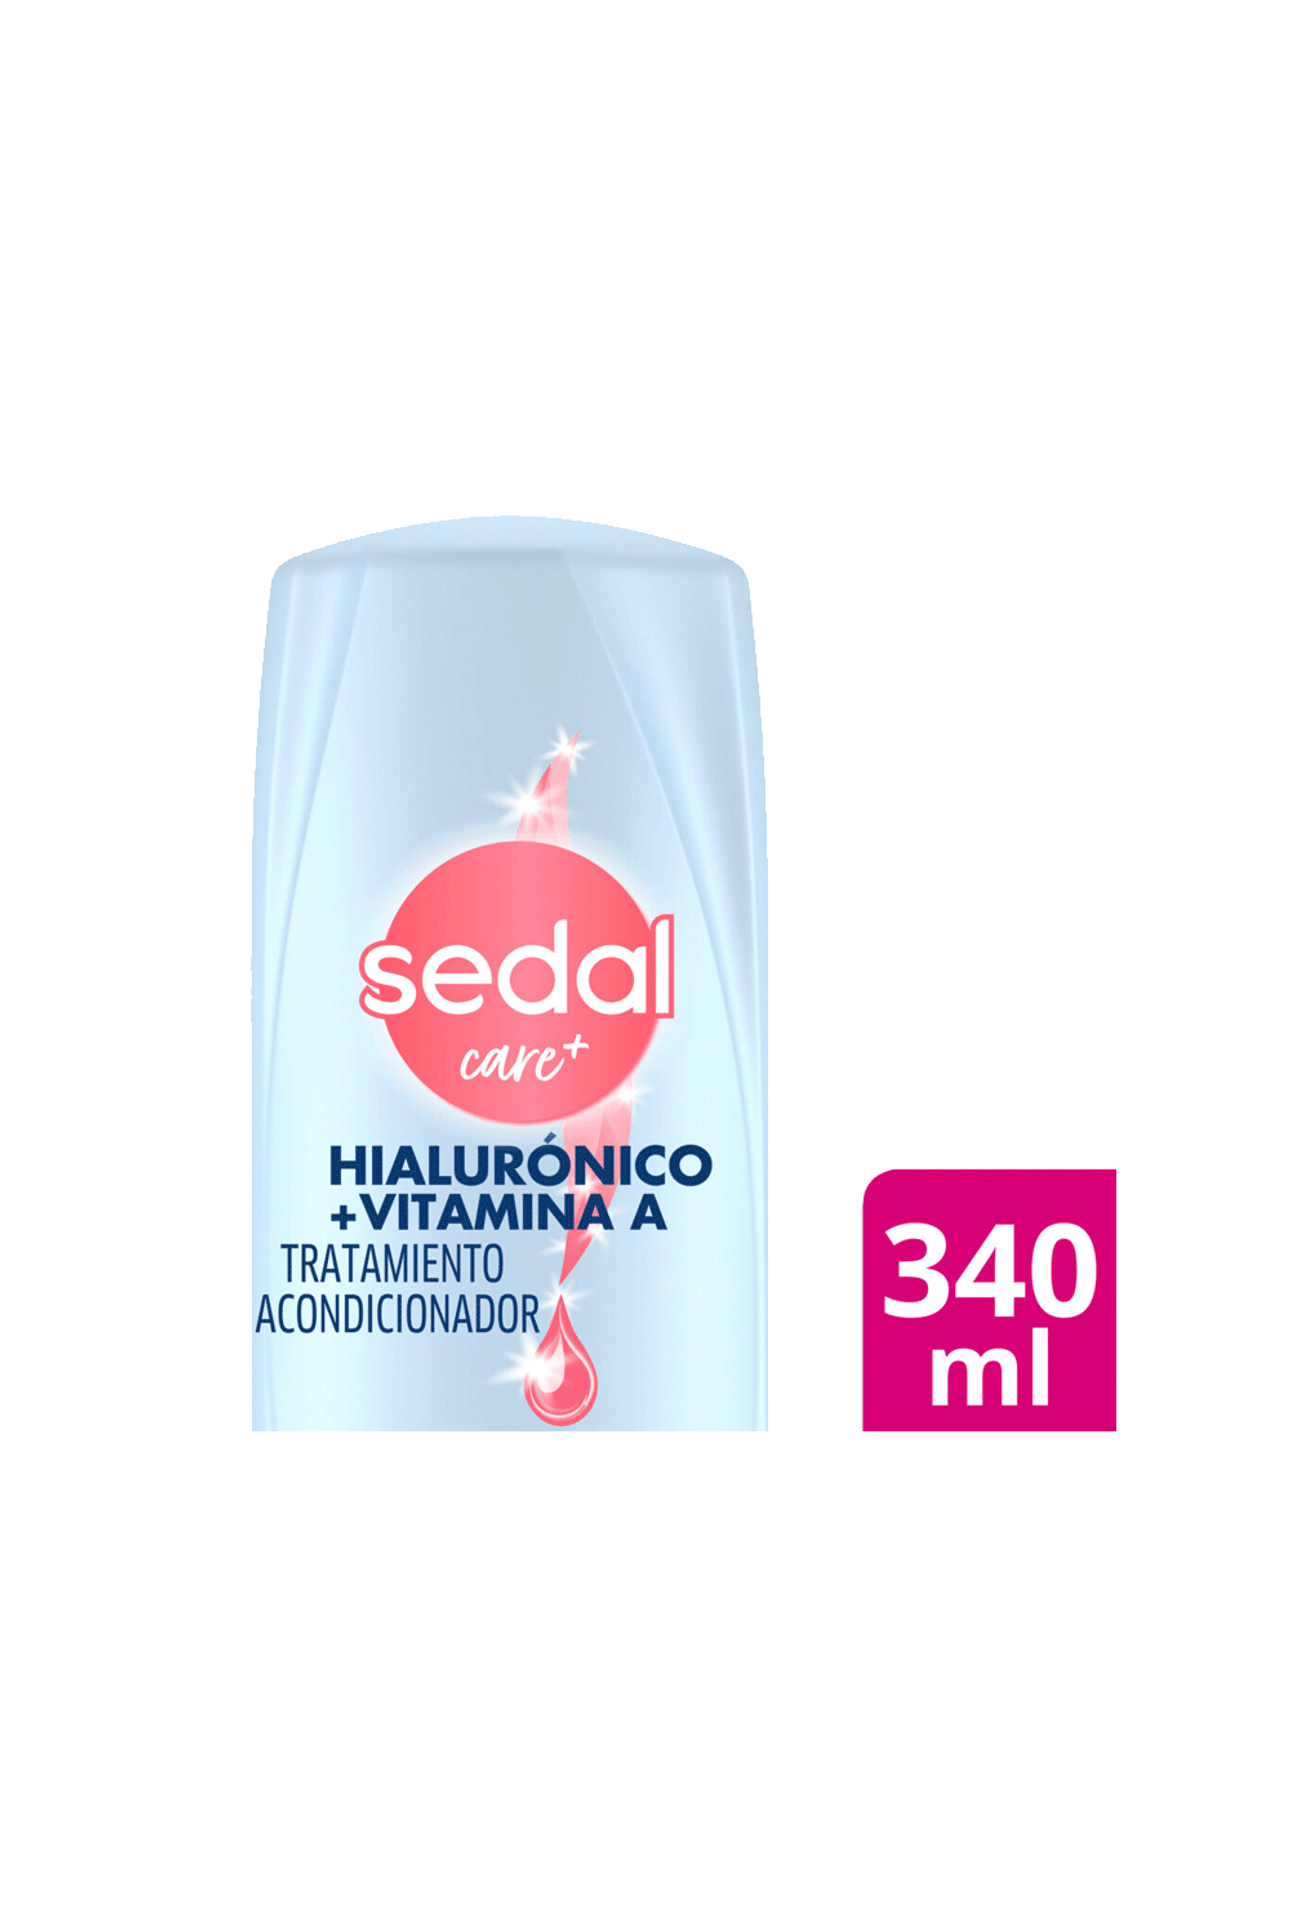 Sedal-Acondicionador-Sedal-Hialuronico-y-Vitamina-A-x-340-ml-7791293046433_img1